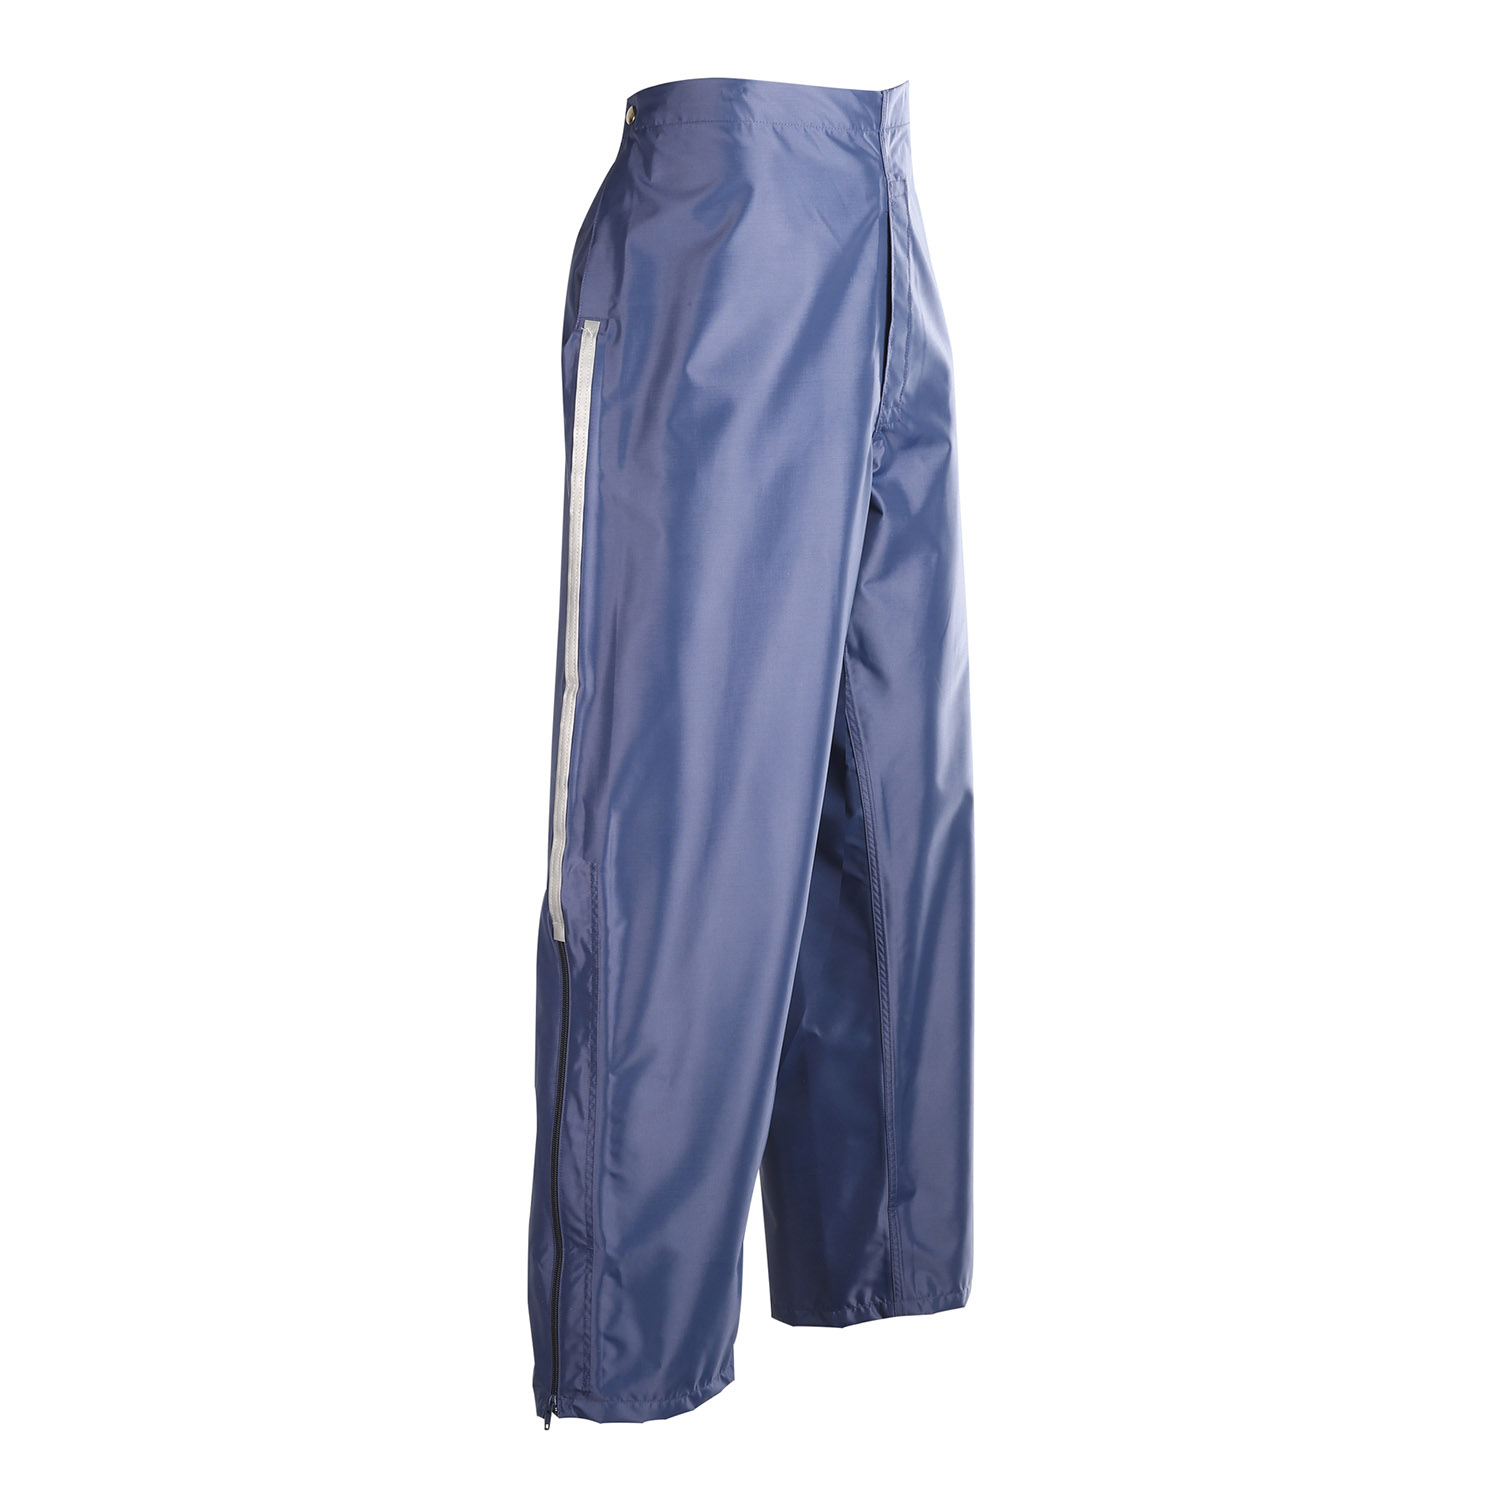 Women's Postal Uniform Rain Pants, USPS Women's Rain Pants,